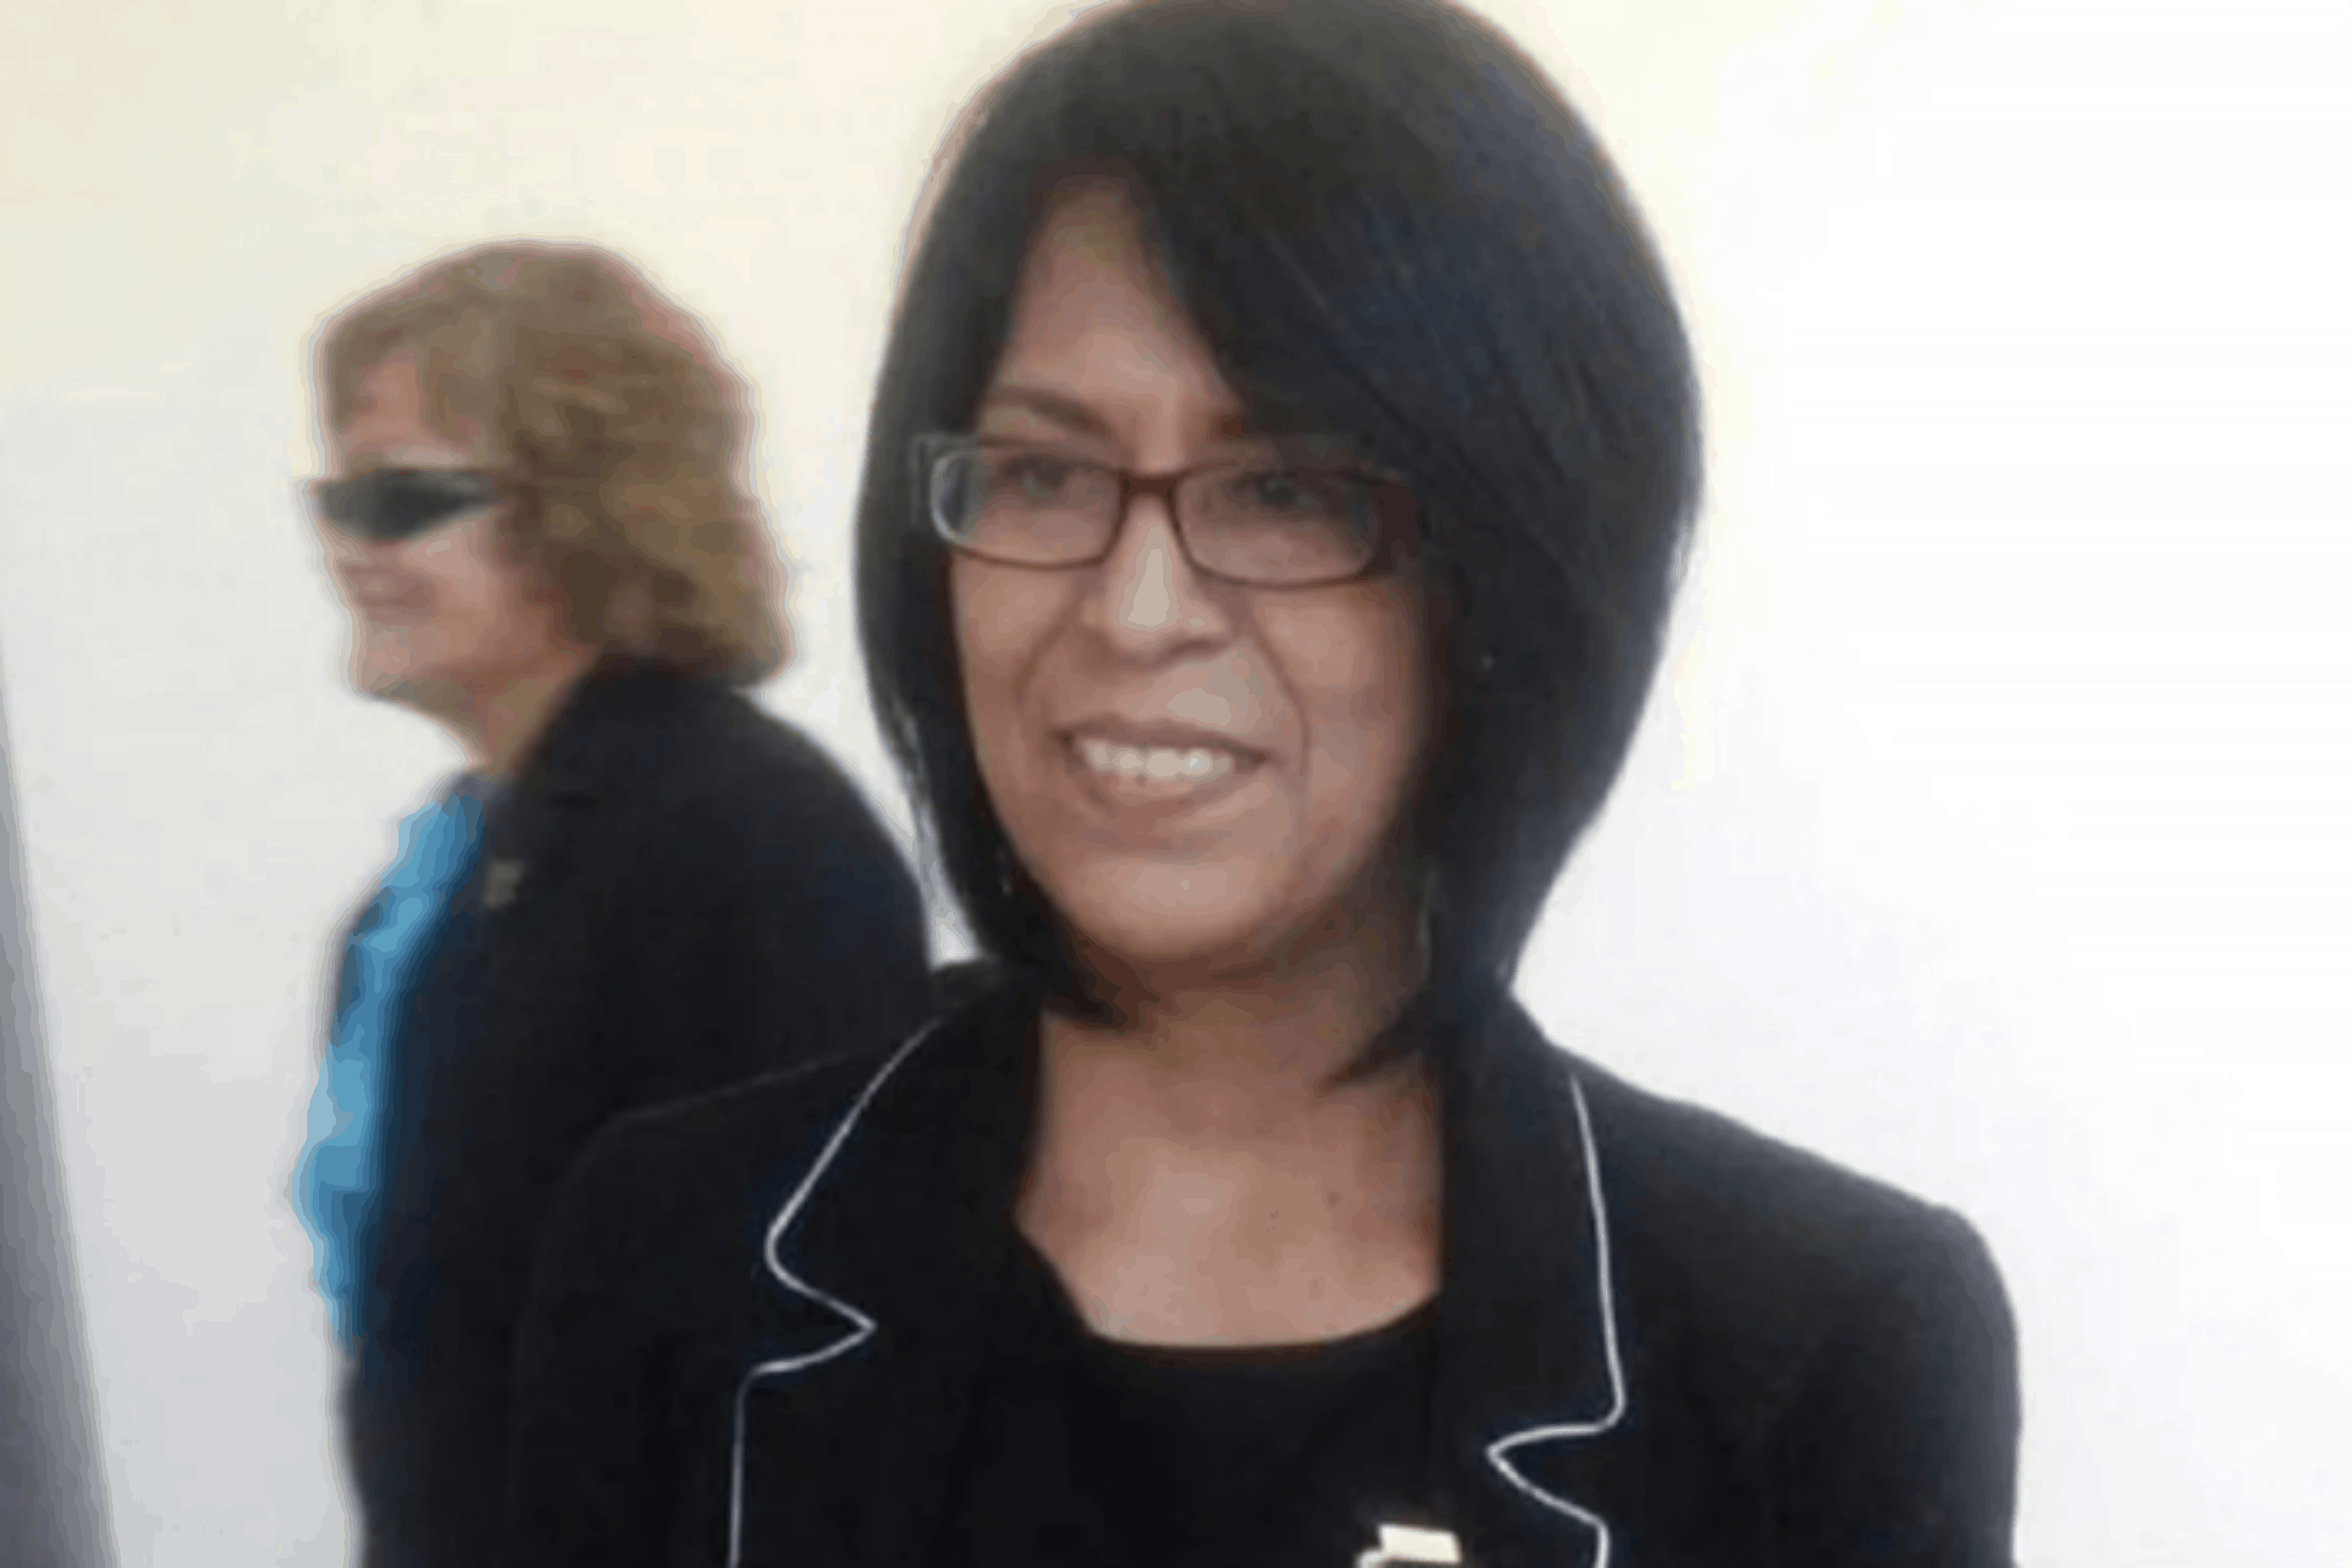 Periodista Teresa Montaño sufre secuestro exprés en Edomex